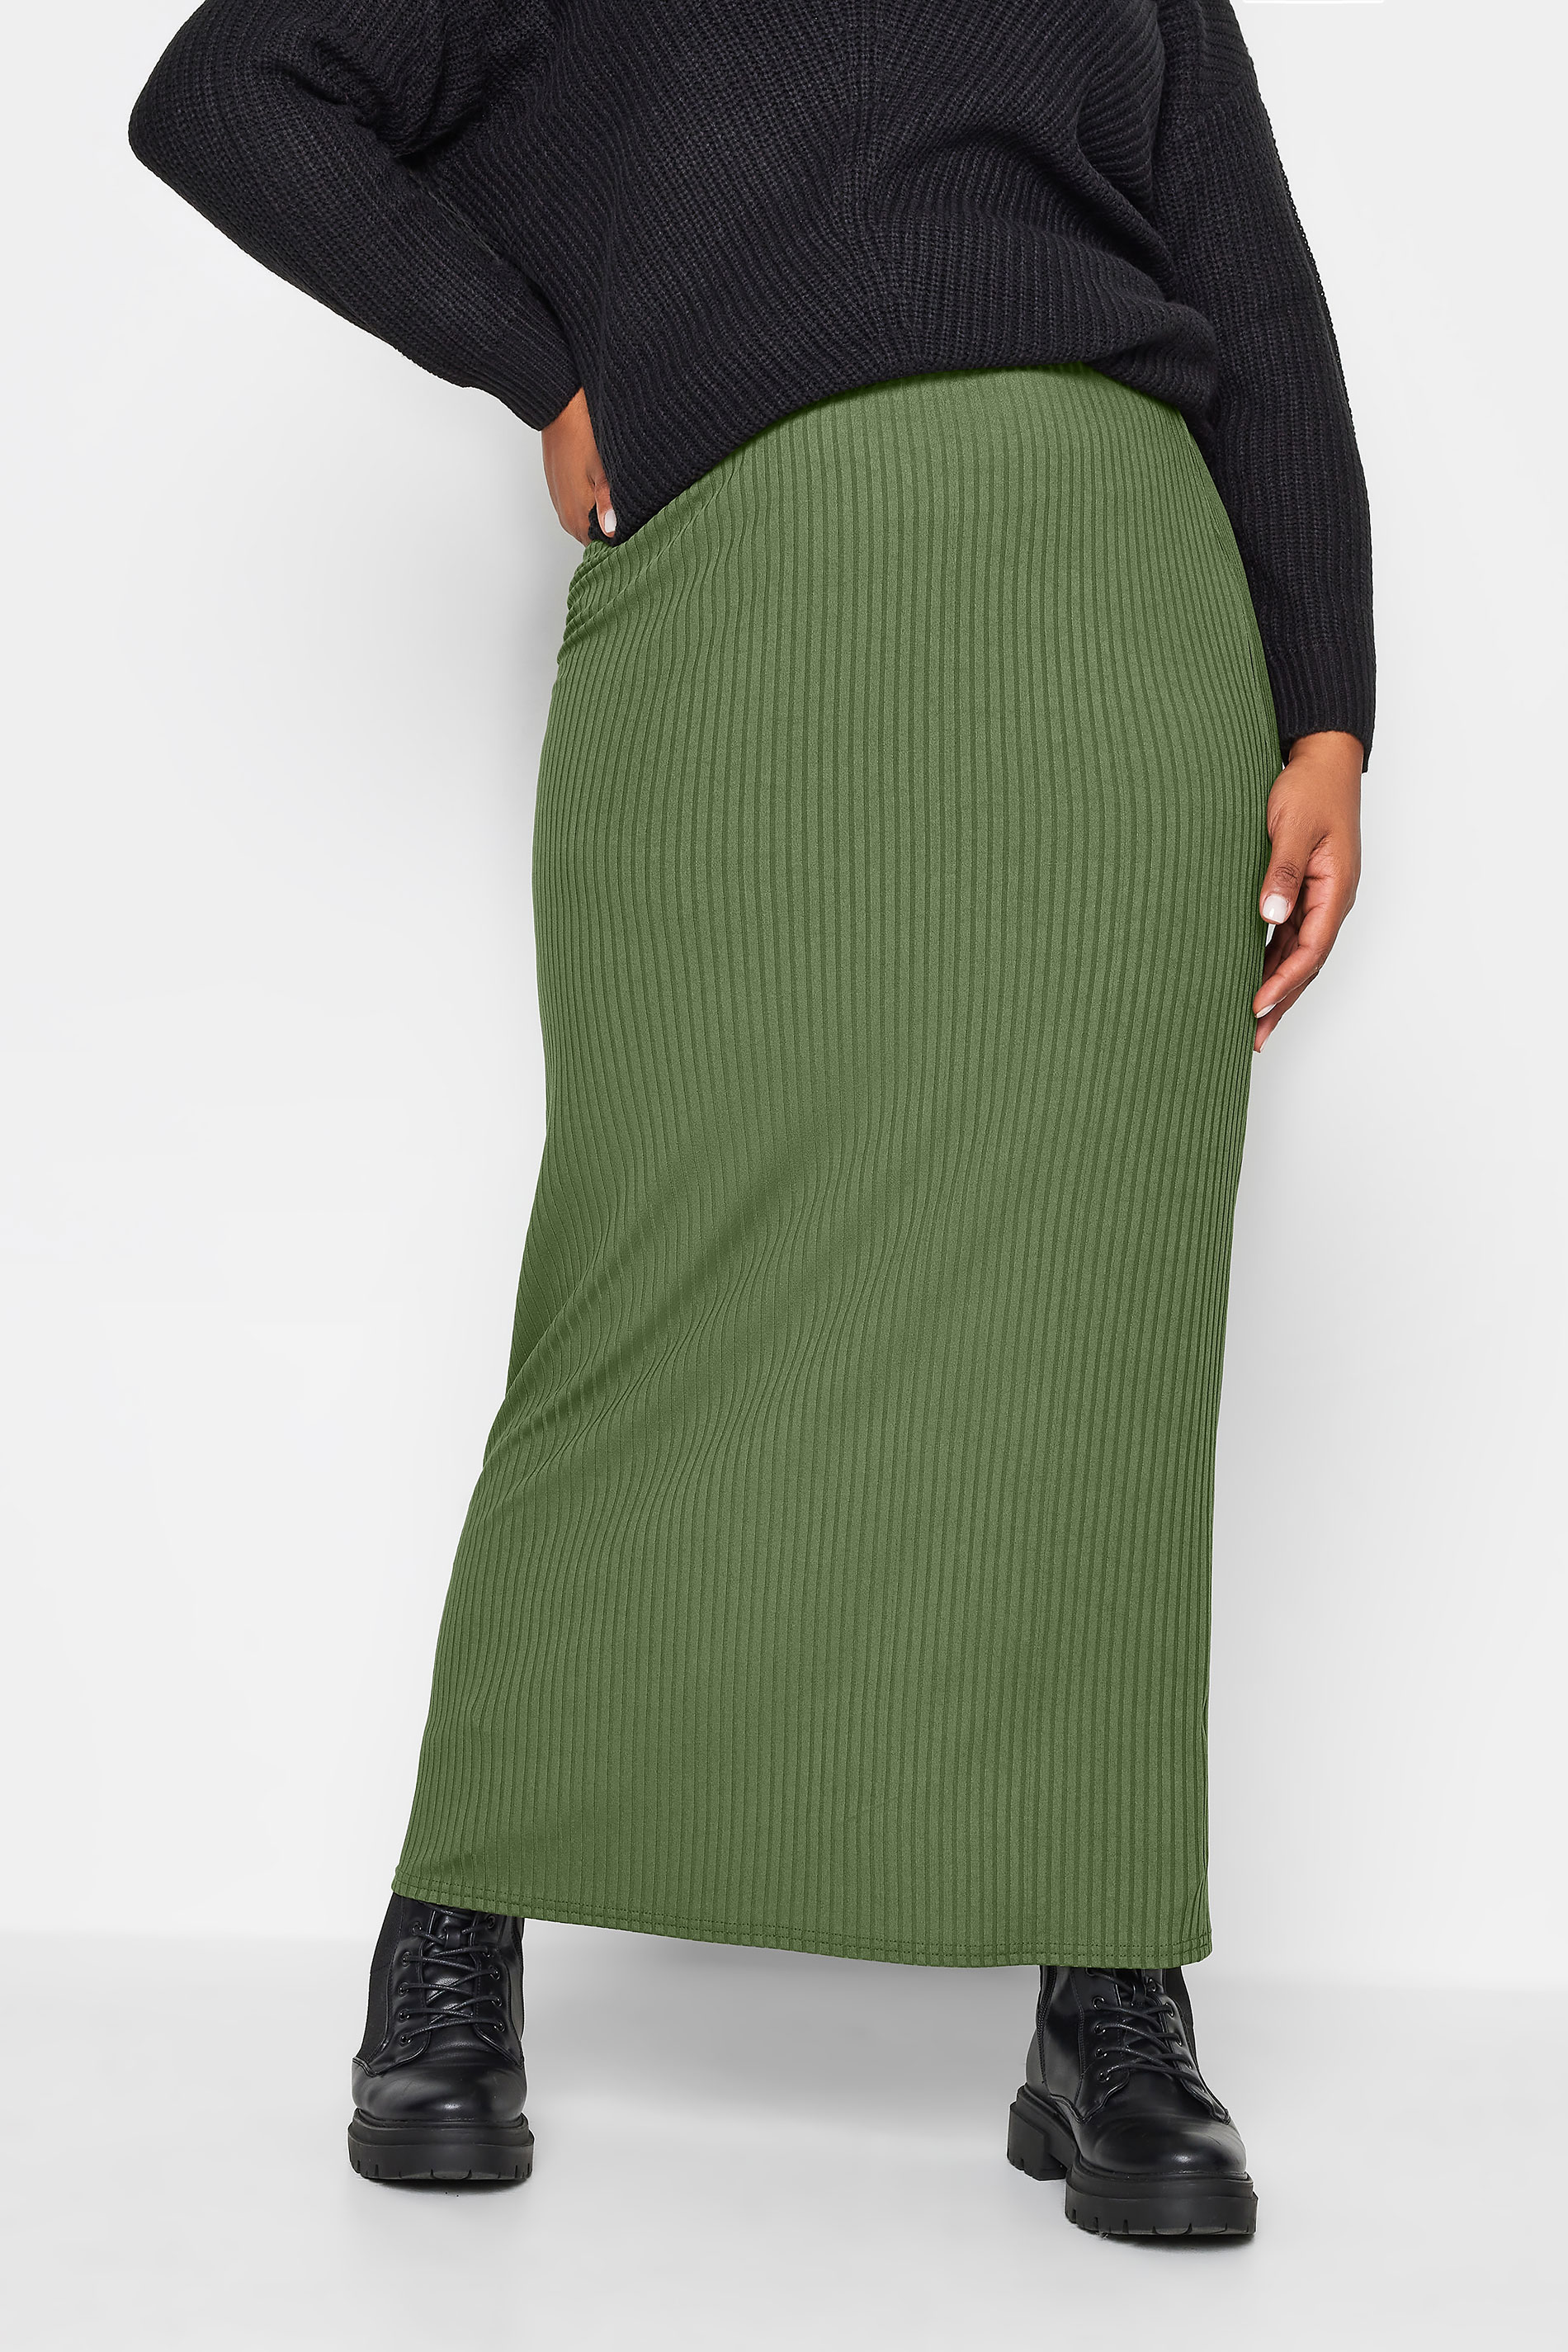 YOURS Plus Size Khaki Ribbed Maxi Skirt | Yours Clothing 1